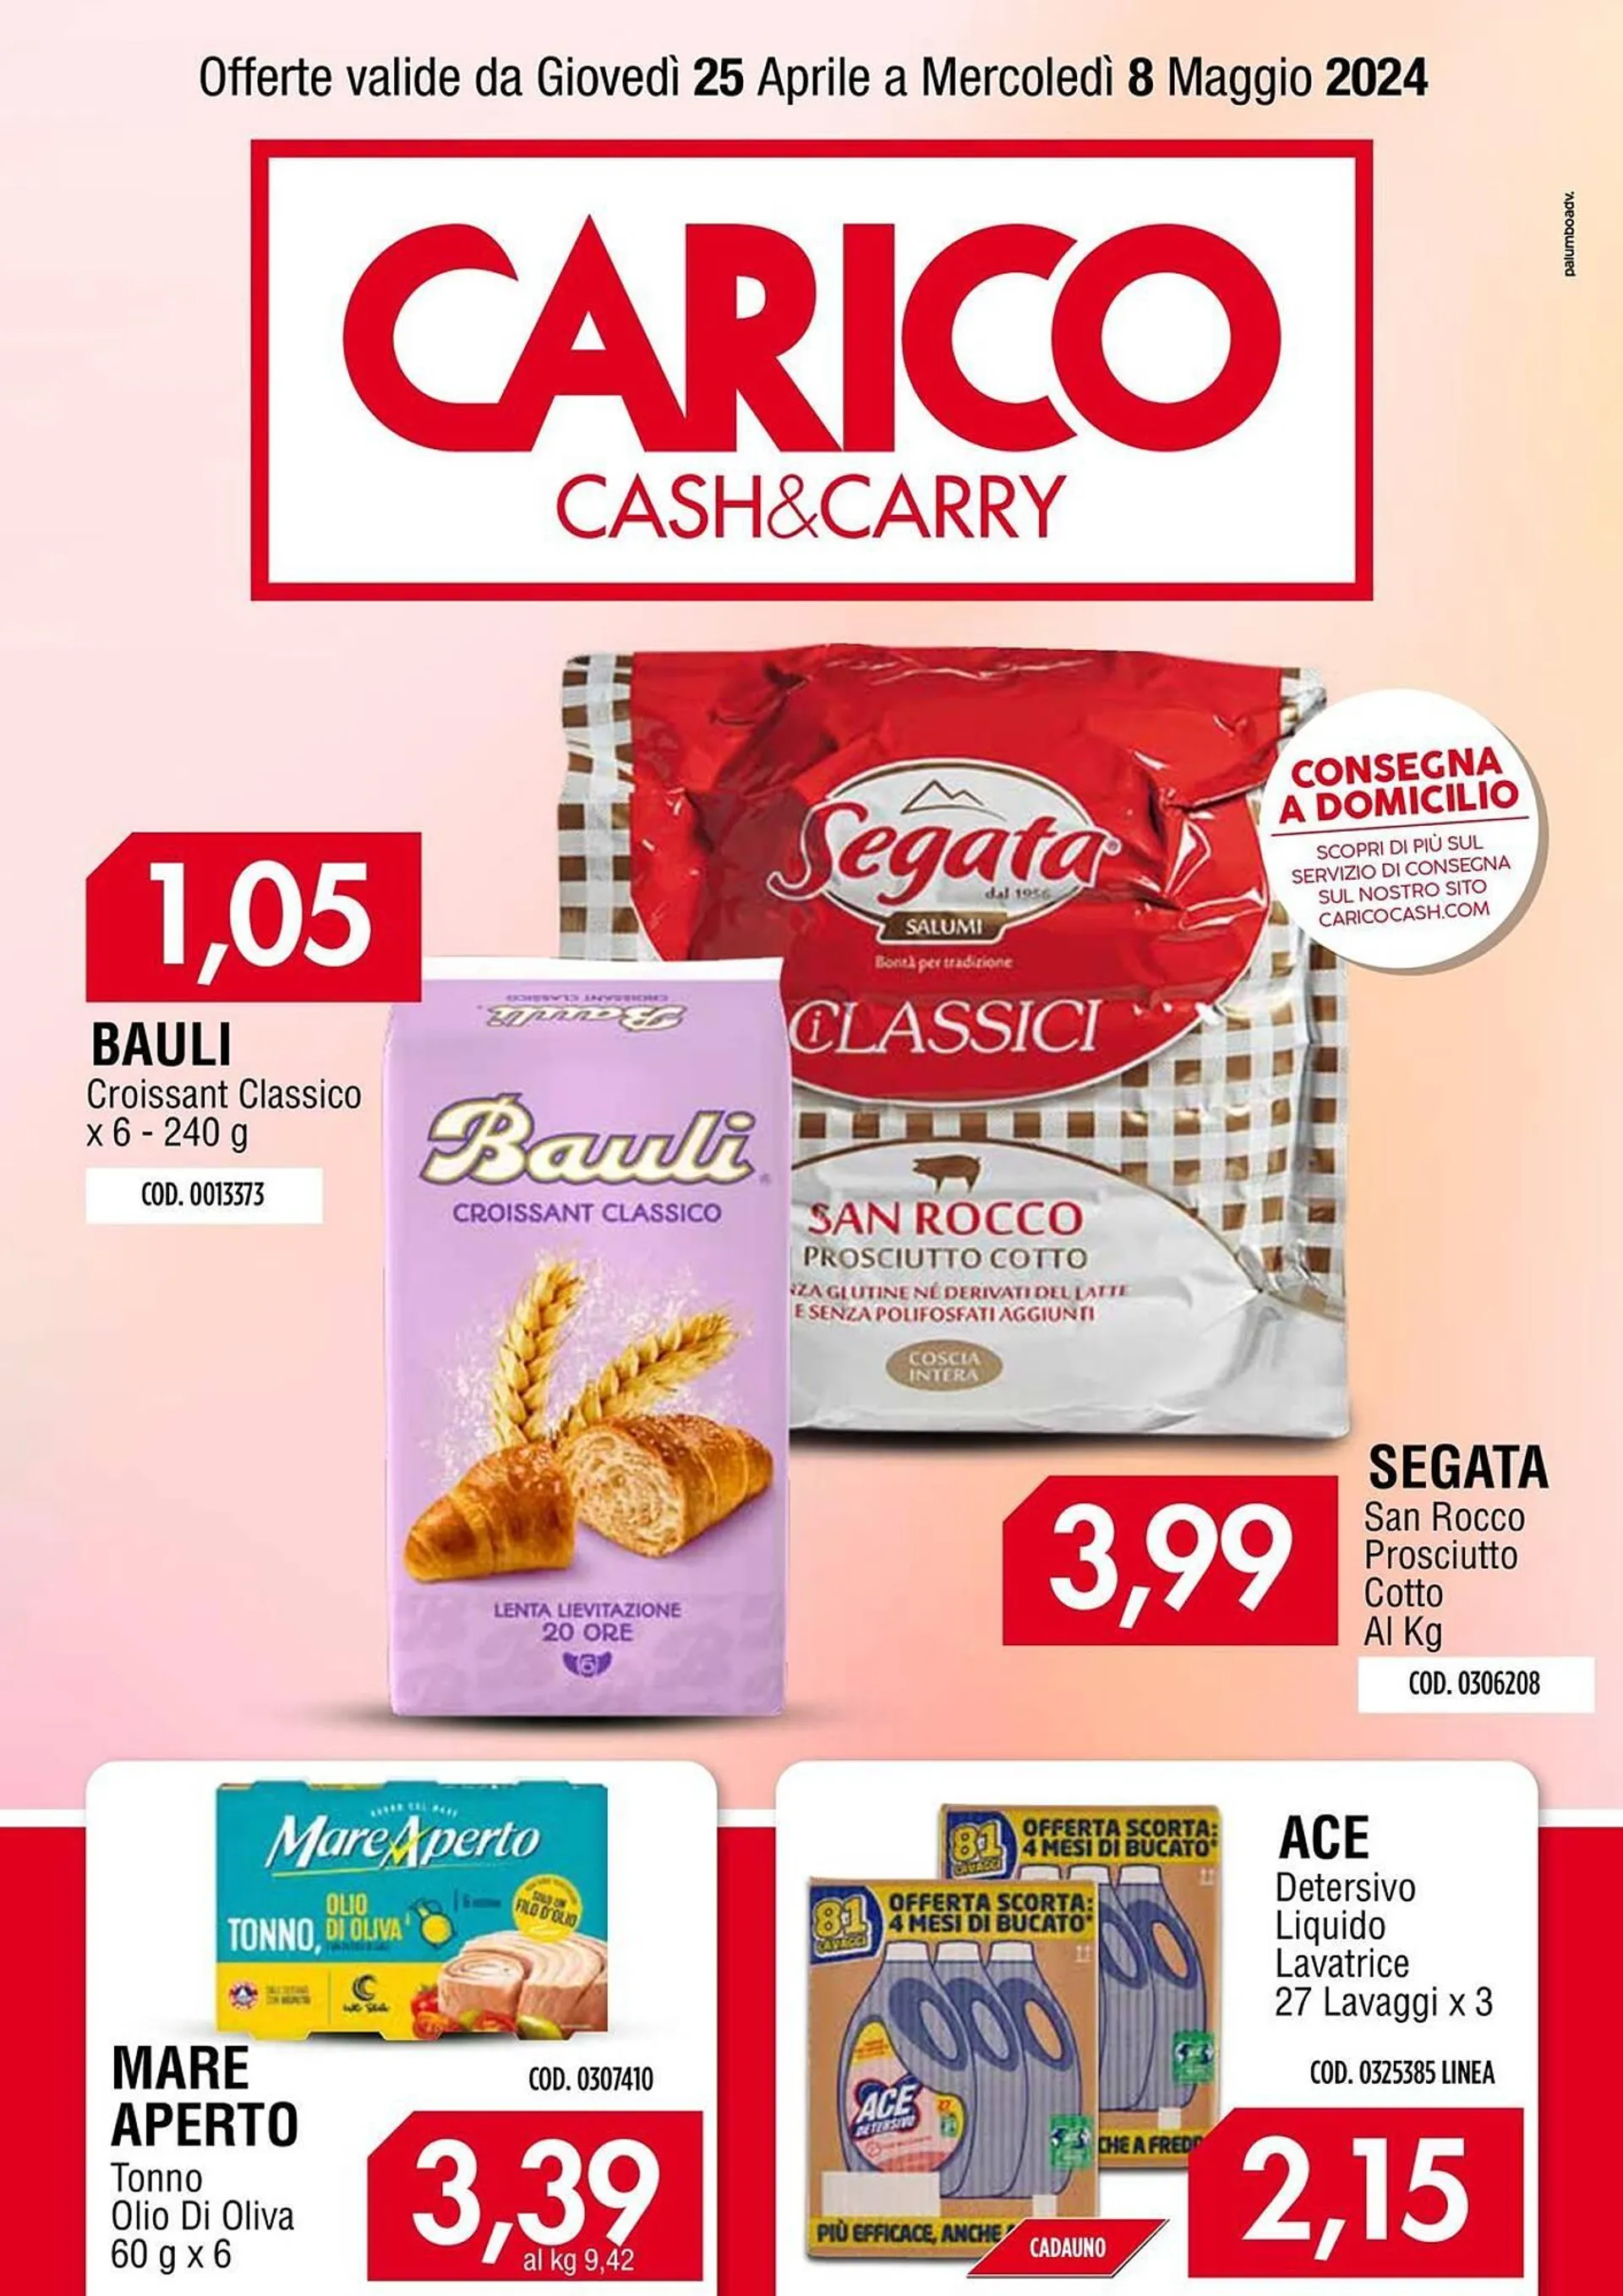 Volantino Carico Cash & Carry - 1